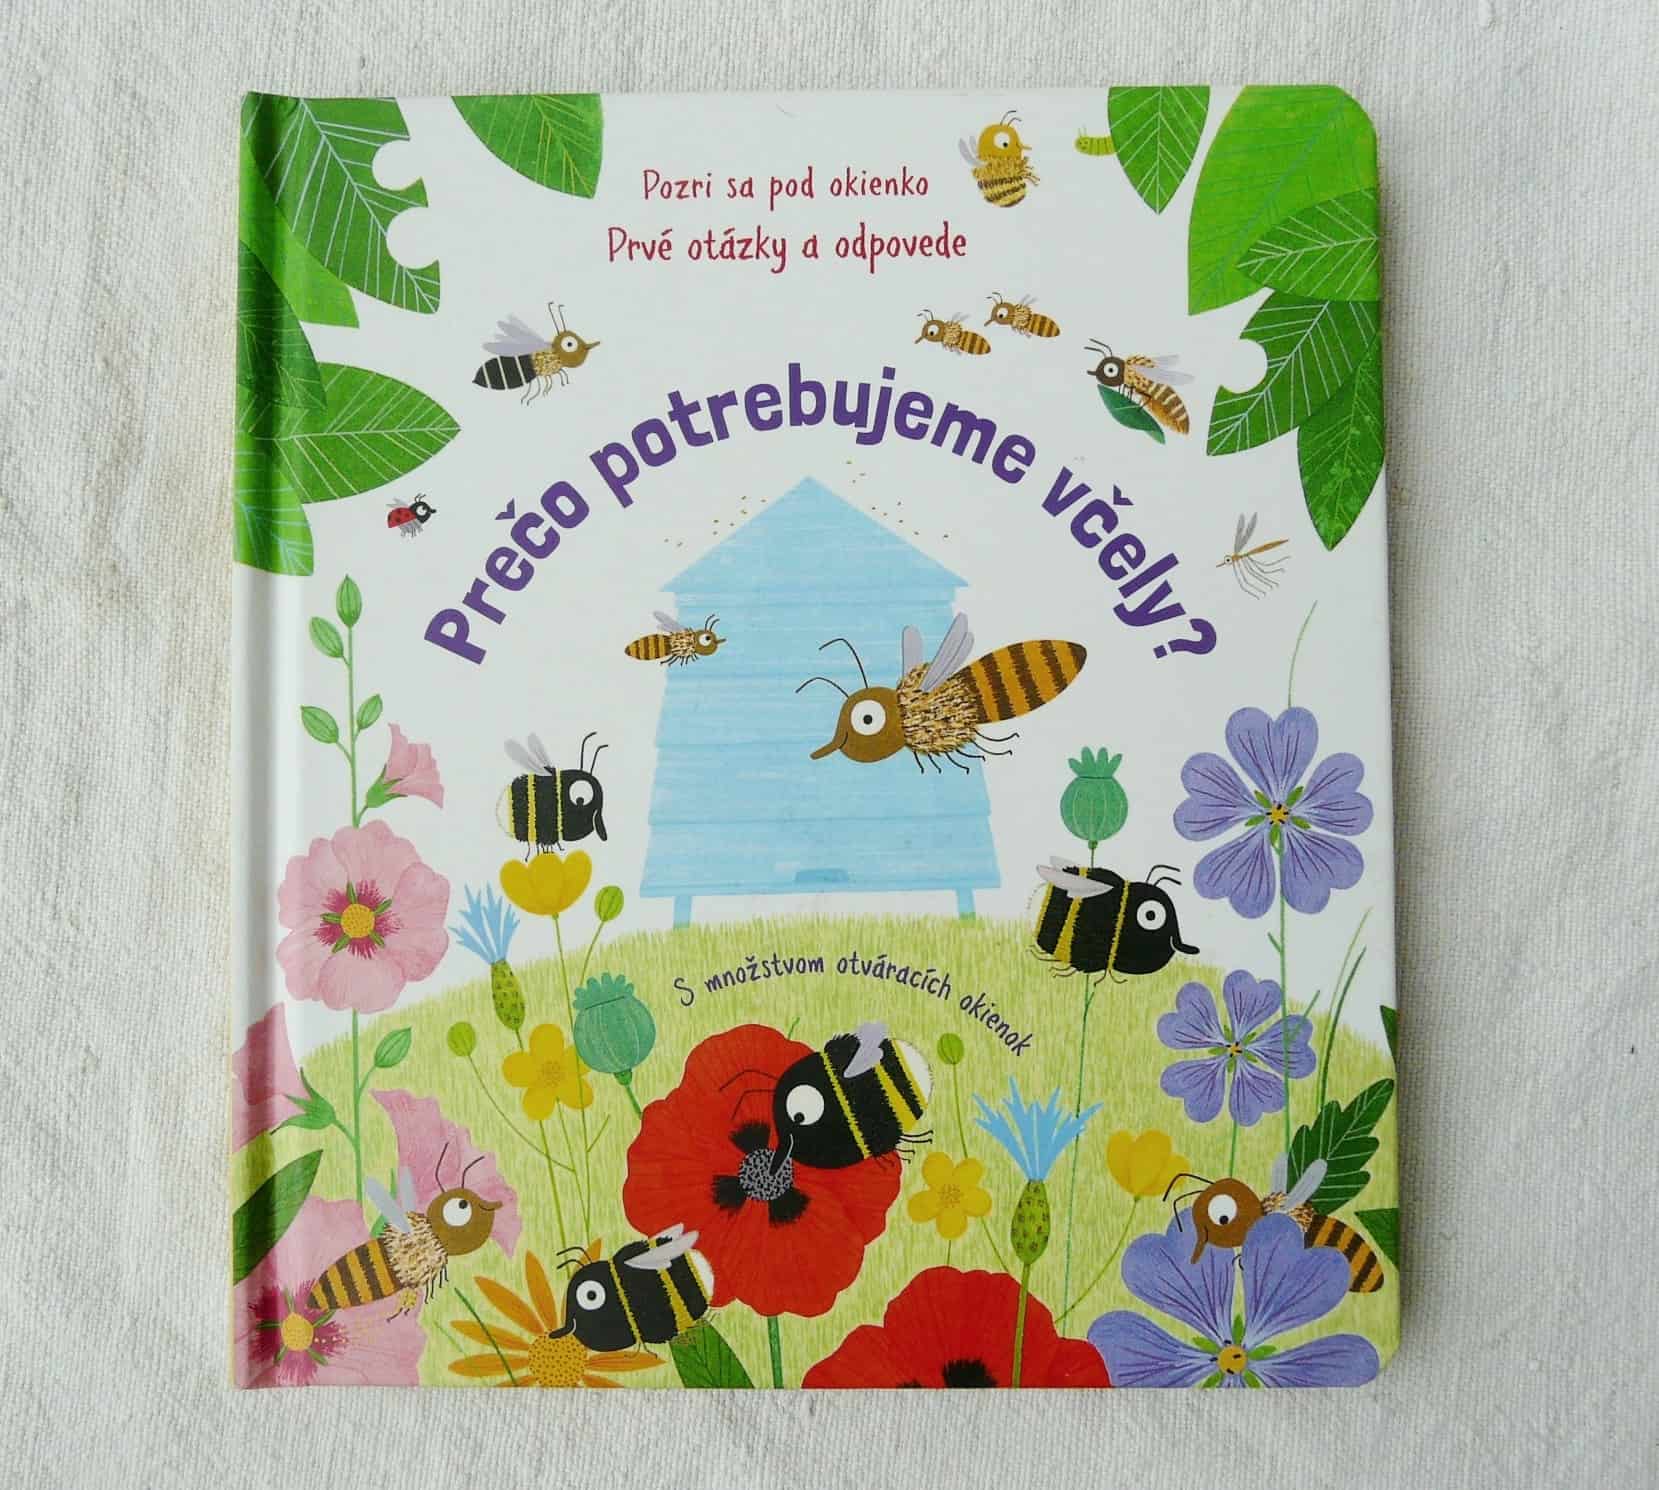 včely - P1200267 - Svet malých čitateľov: Spoznajte úžasné včely so svojimi deťmi